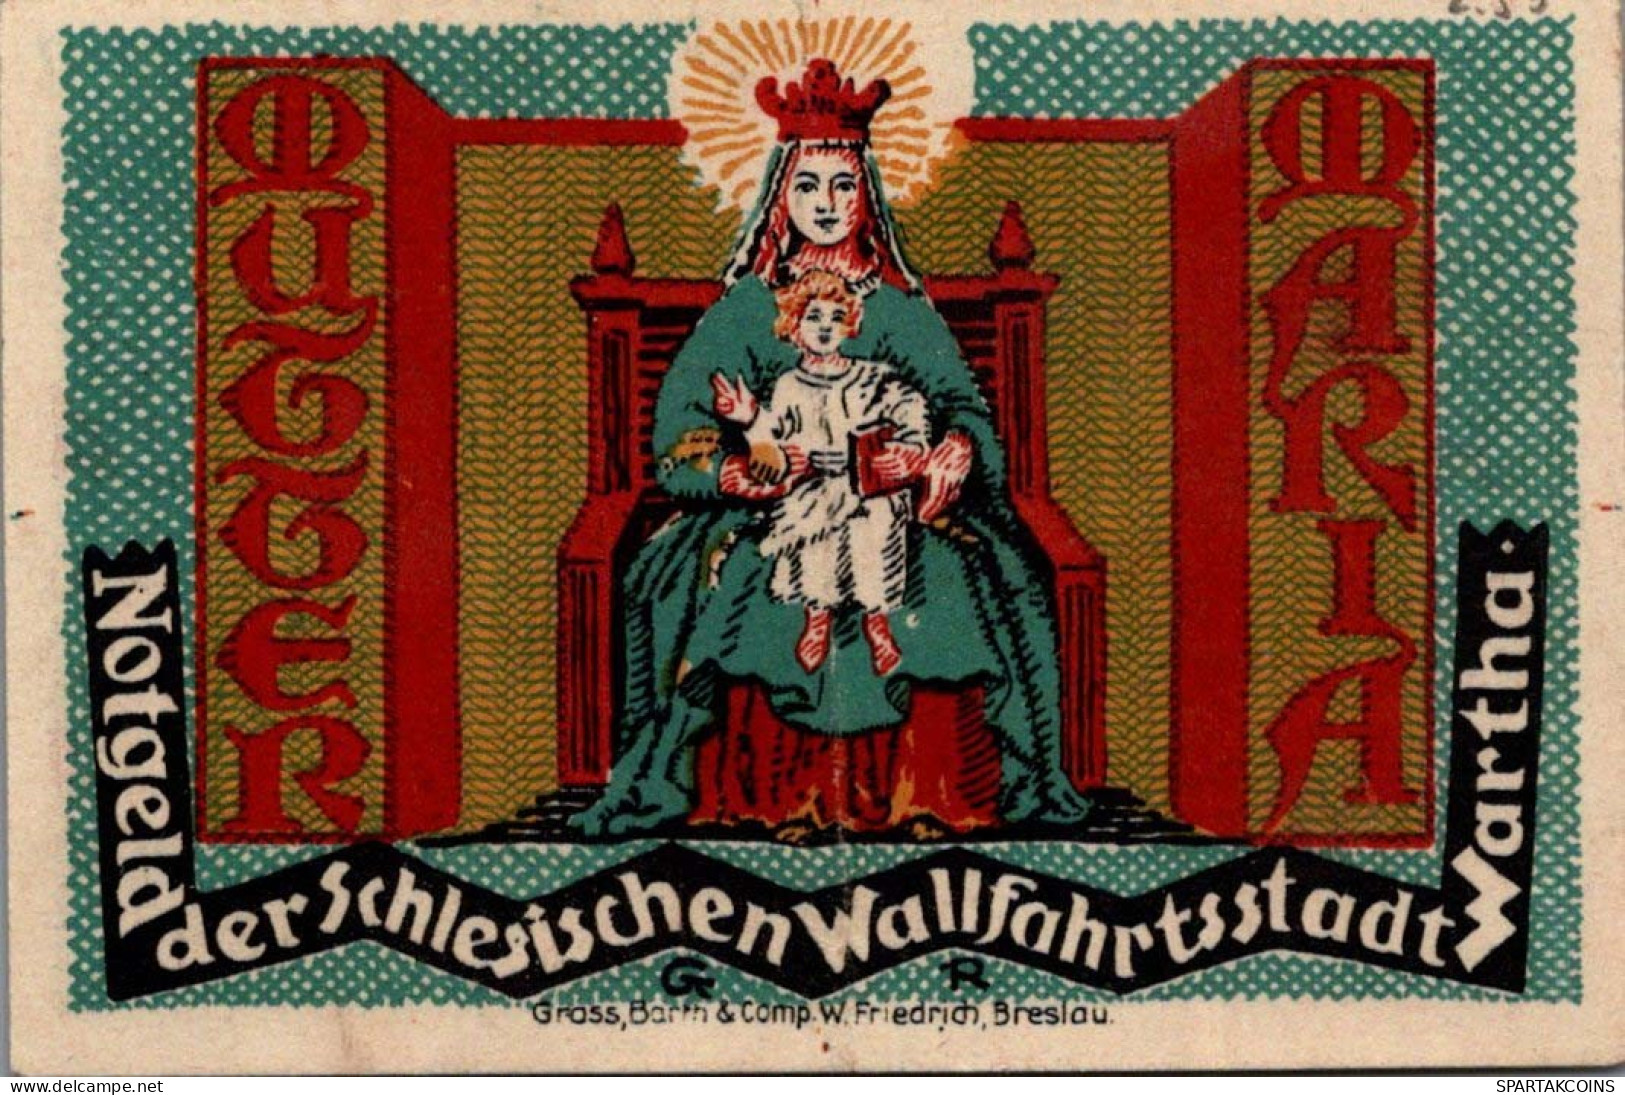 50 PFENNIG 1921 Stadt Wartha DEUTSCHLAND Notgeld Papiergeld Banknote #PG053 - [11] Local Banknote Issues